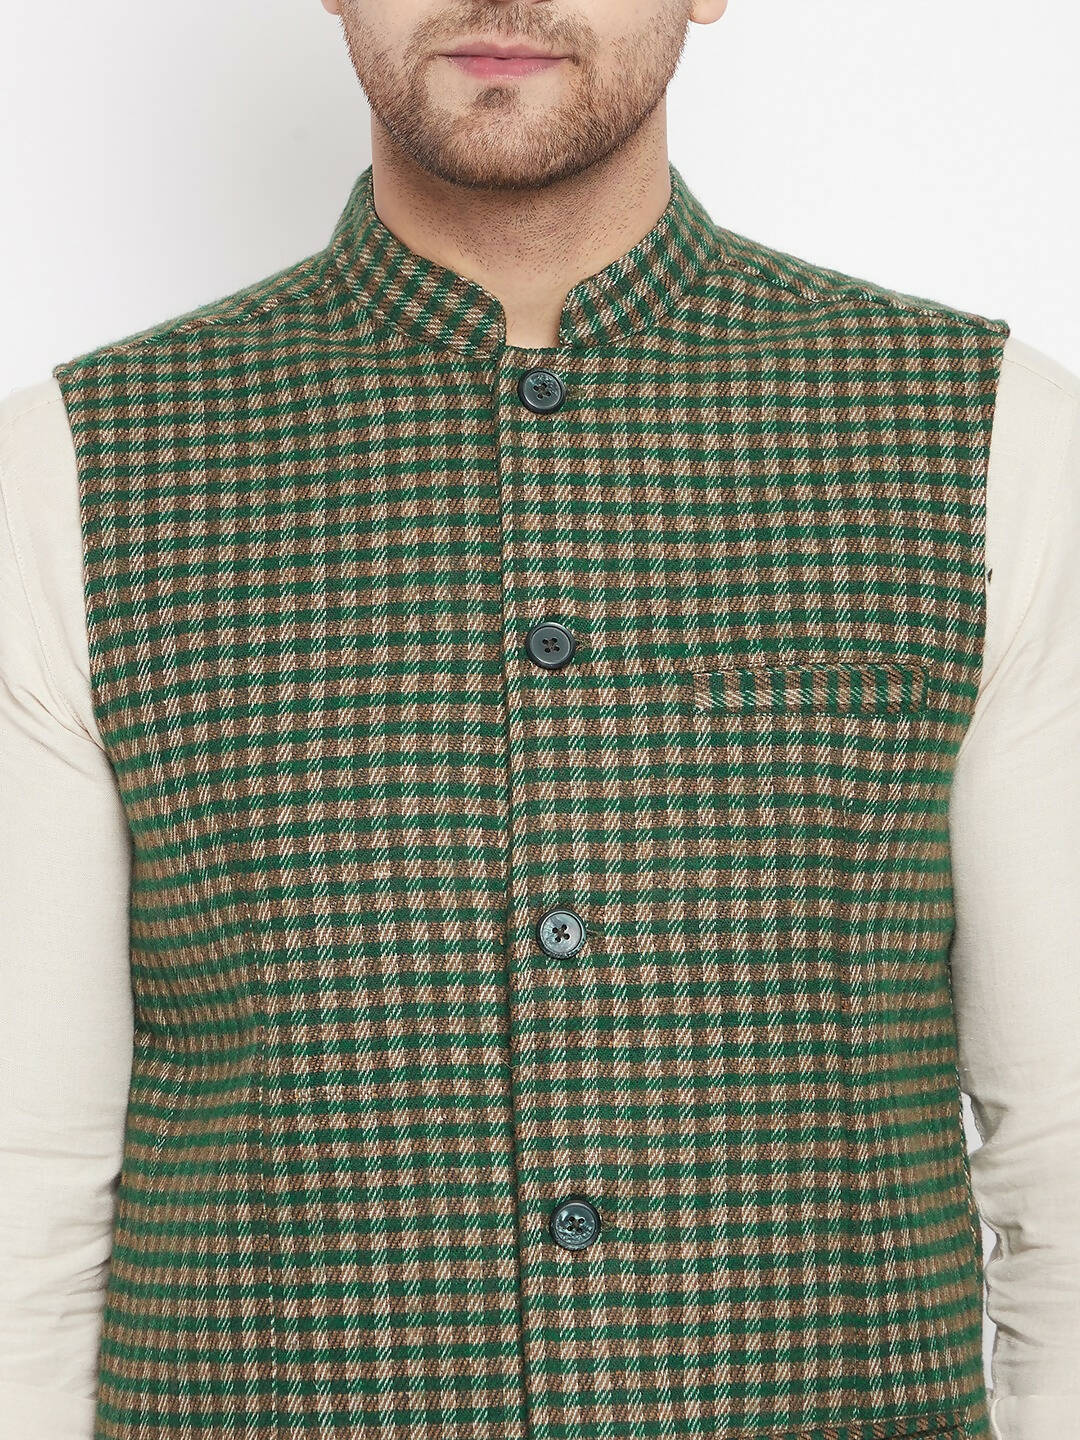 Even Apparels Green Wool Men Woven Nehru Jacket - Distacart